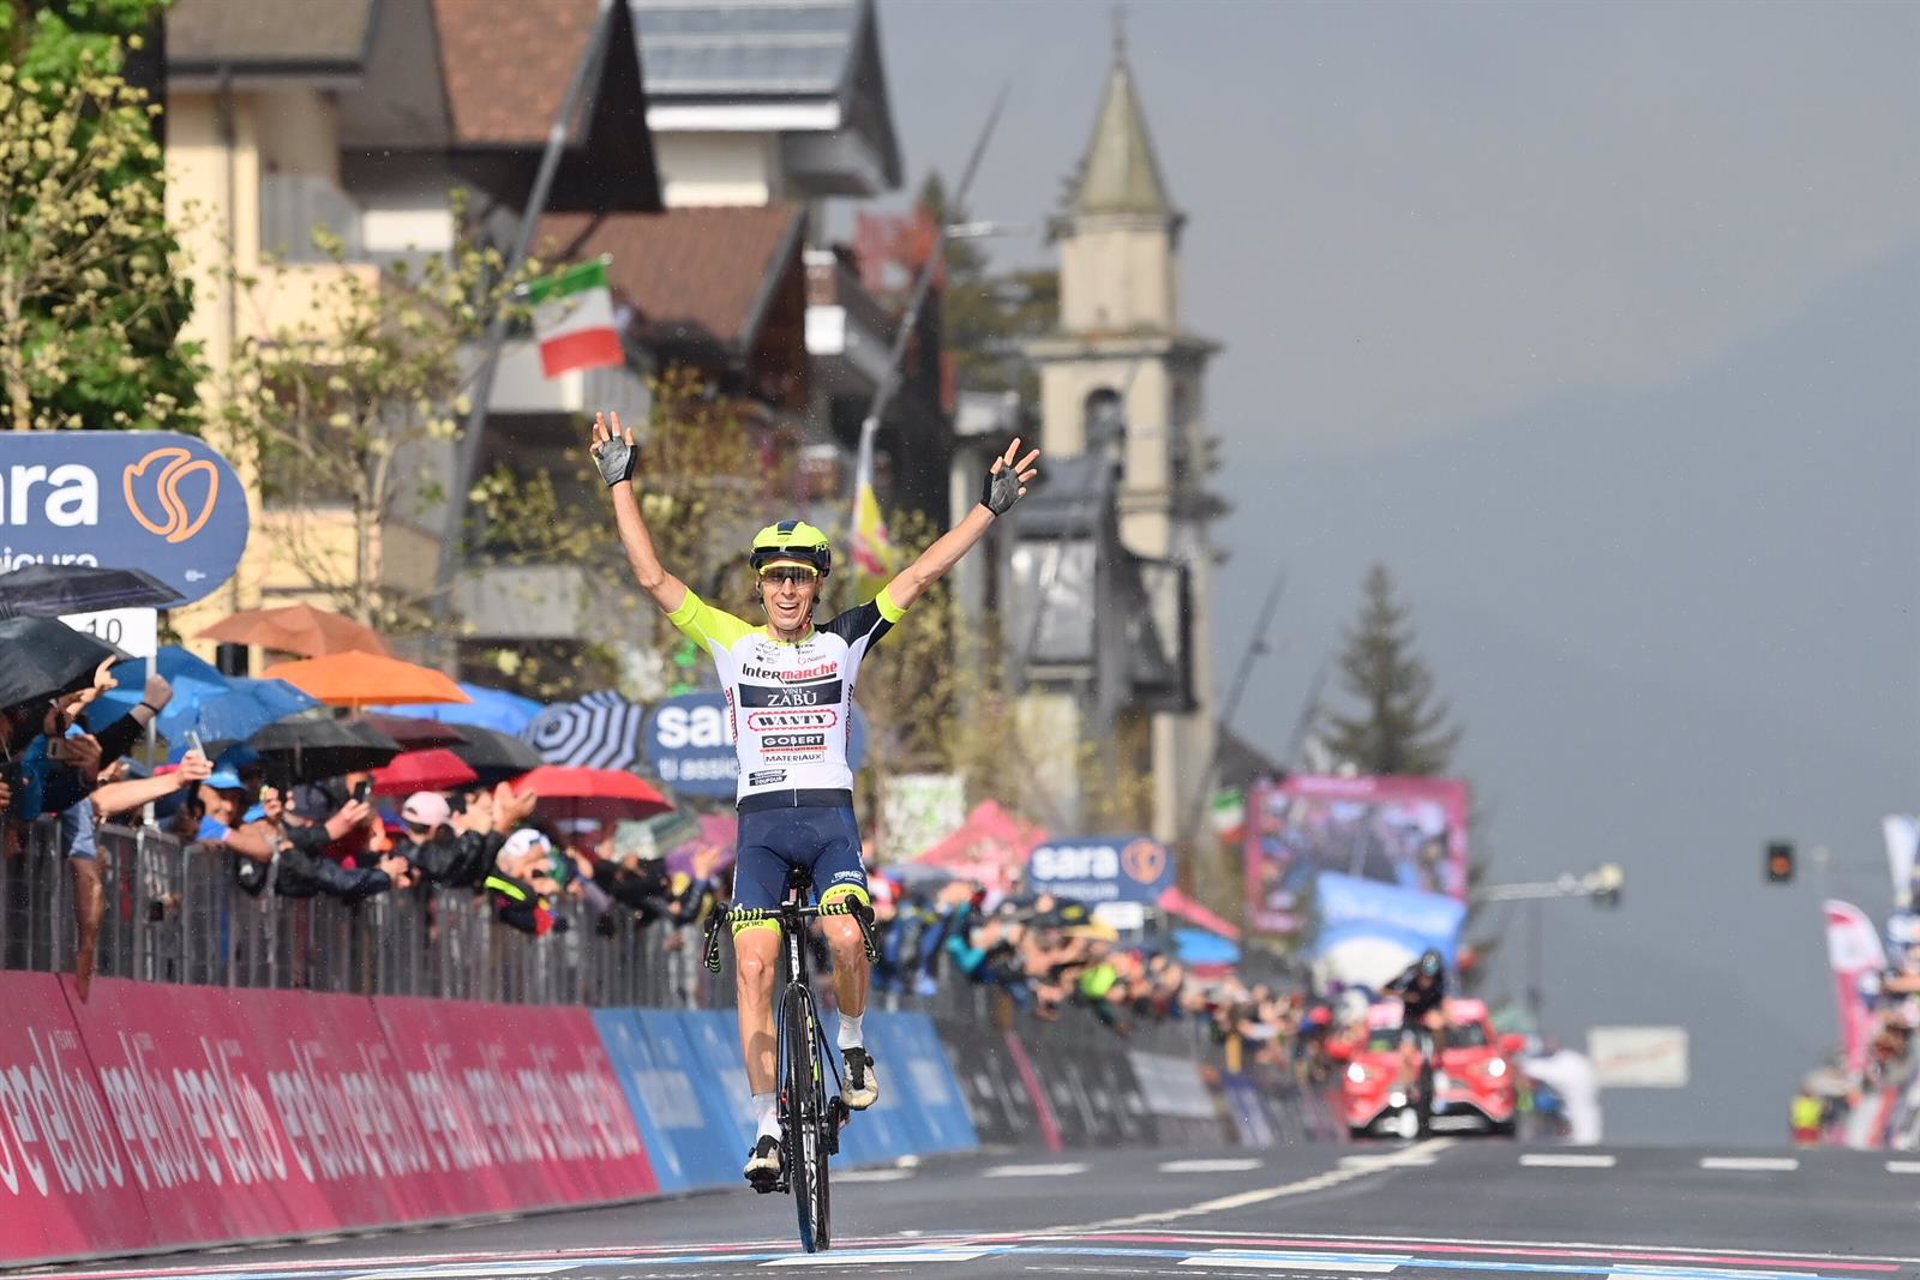 24/05/2022 El checo Jan Hirt (Intermarché) gana la etapa 16 del Giro de Italia 2022, disputada entre Salò y Aprica sobre 202 kilómetros
DEPORTES
@GIRODITALIA | Foto: Giro de Italia